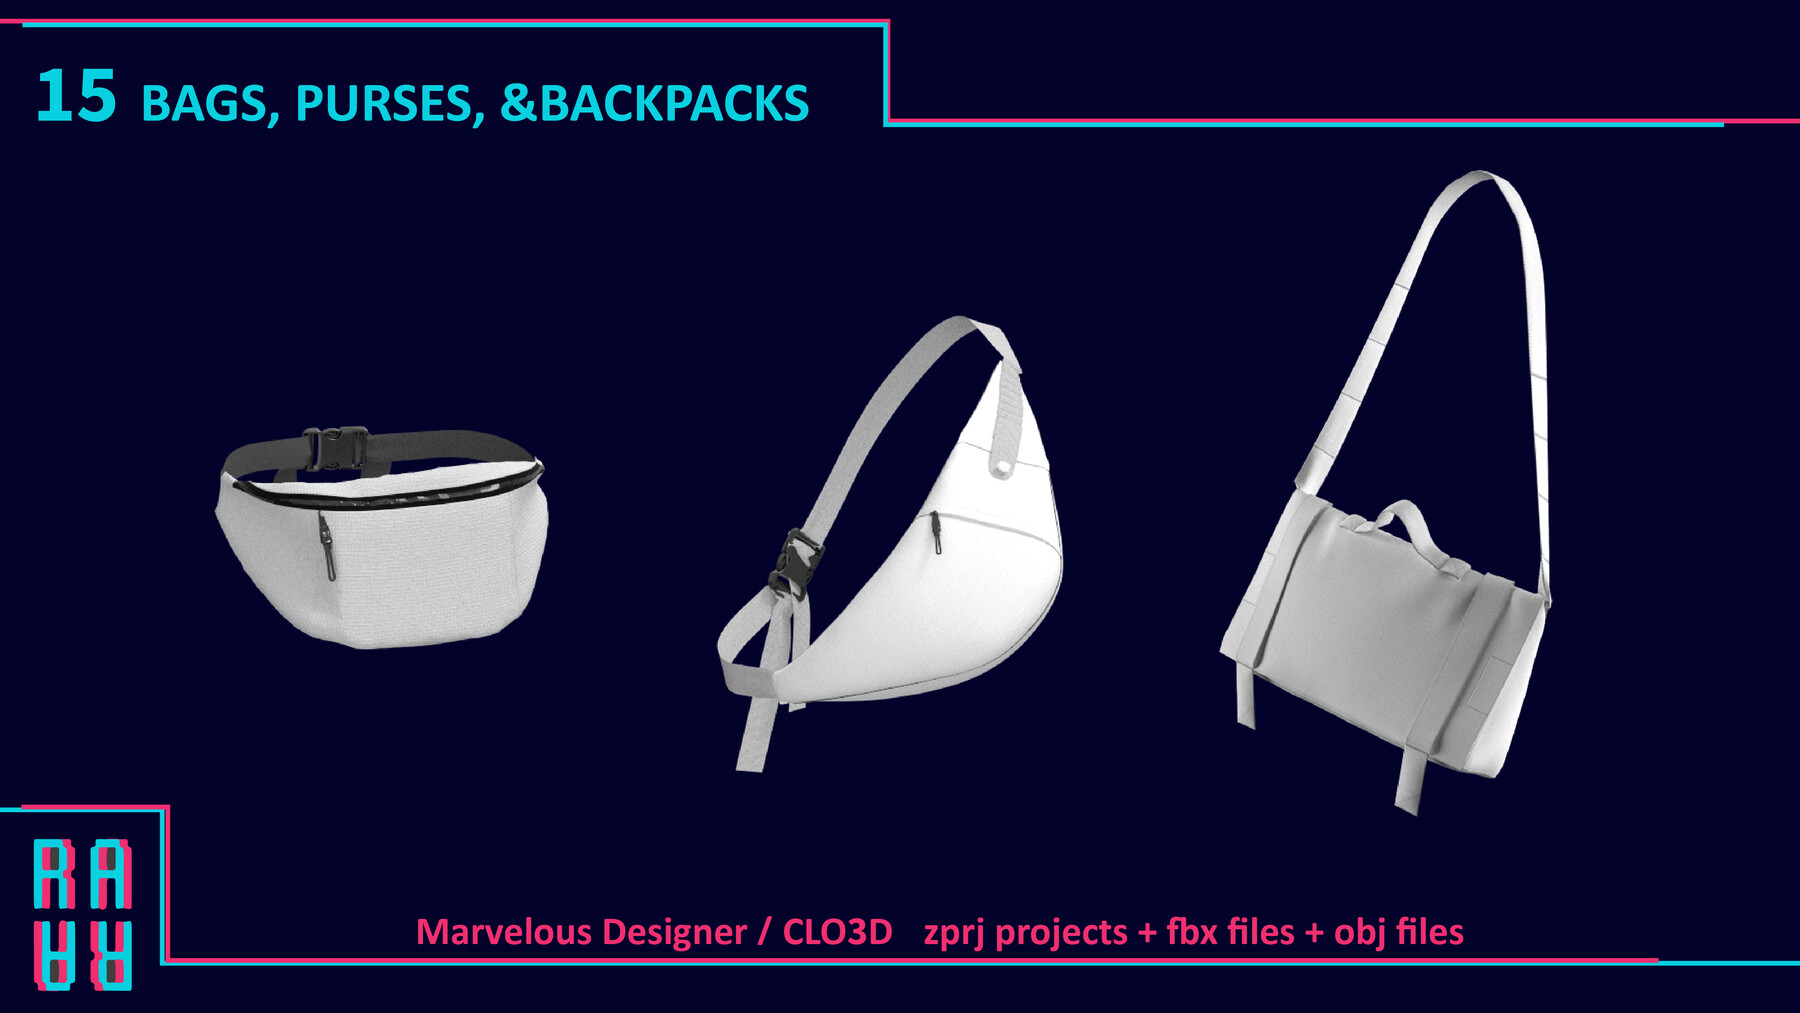 ArtStation - BACKPACK MODELS Vol 40 Marvelous designer/ Clo3d AND OBJ FILES